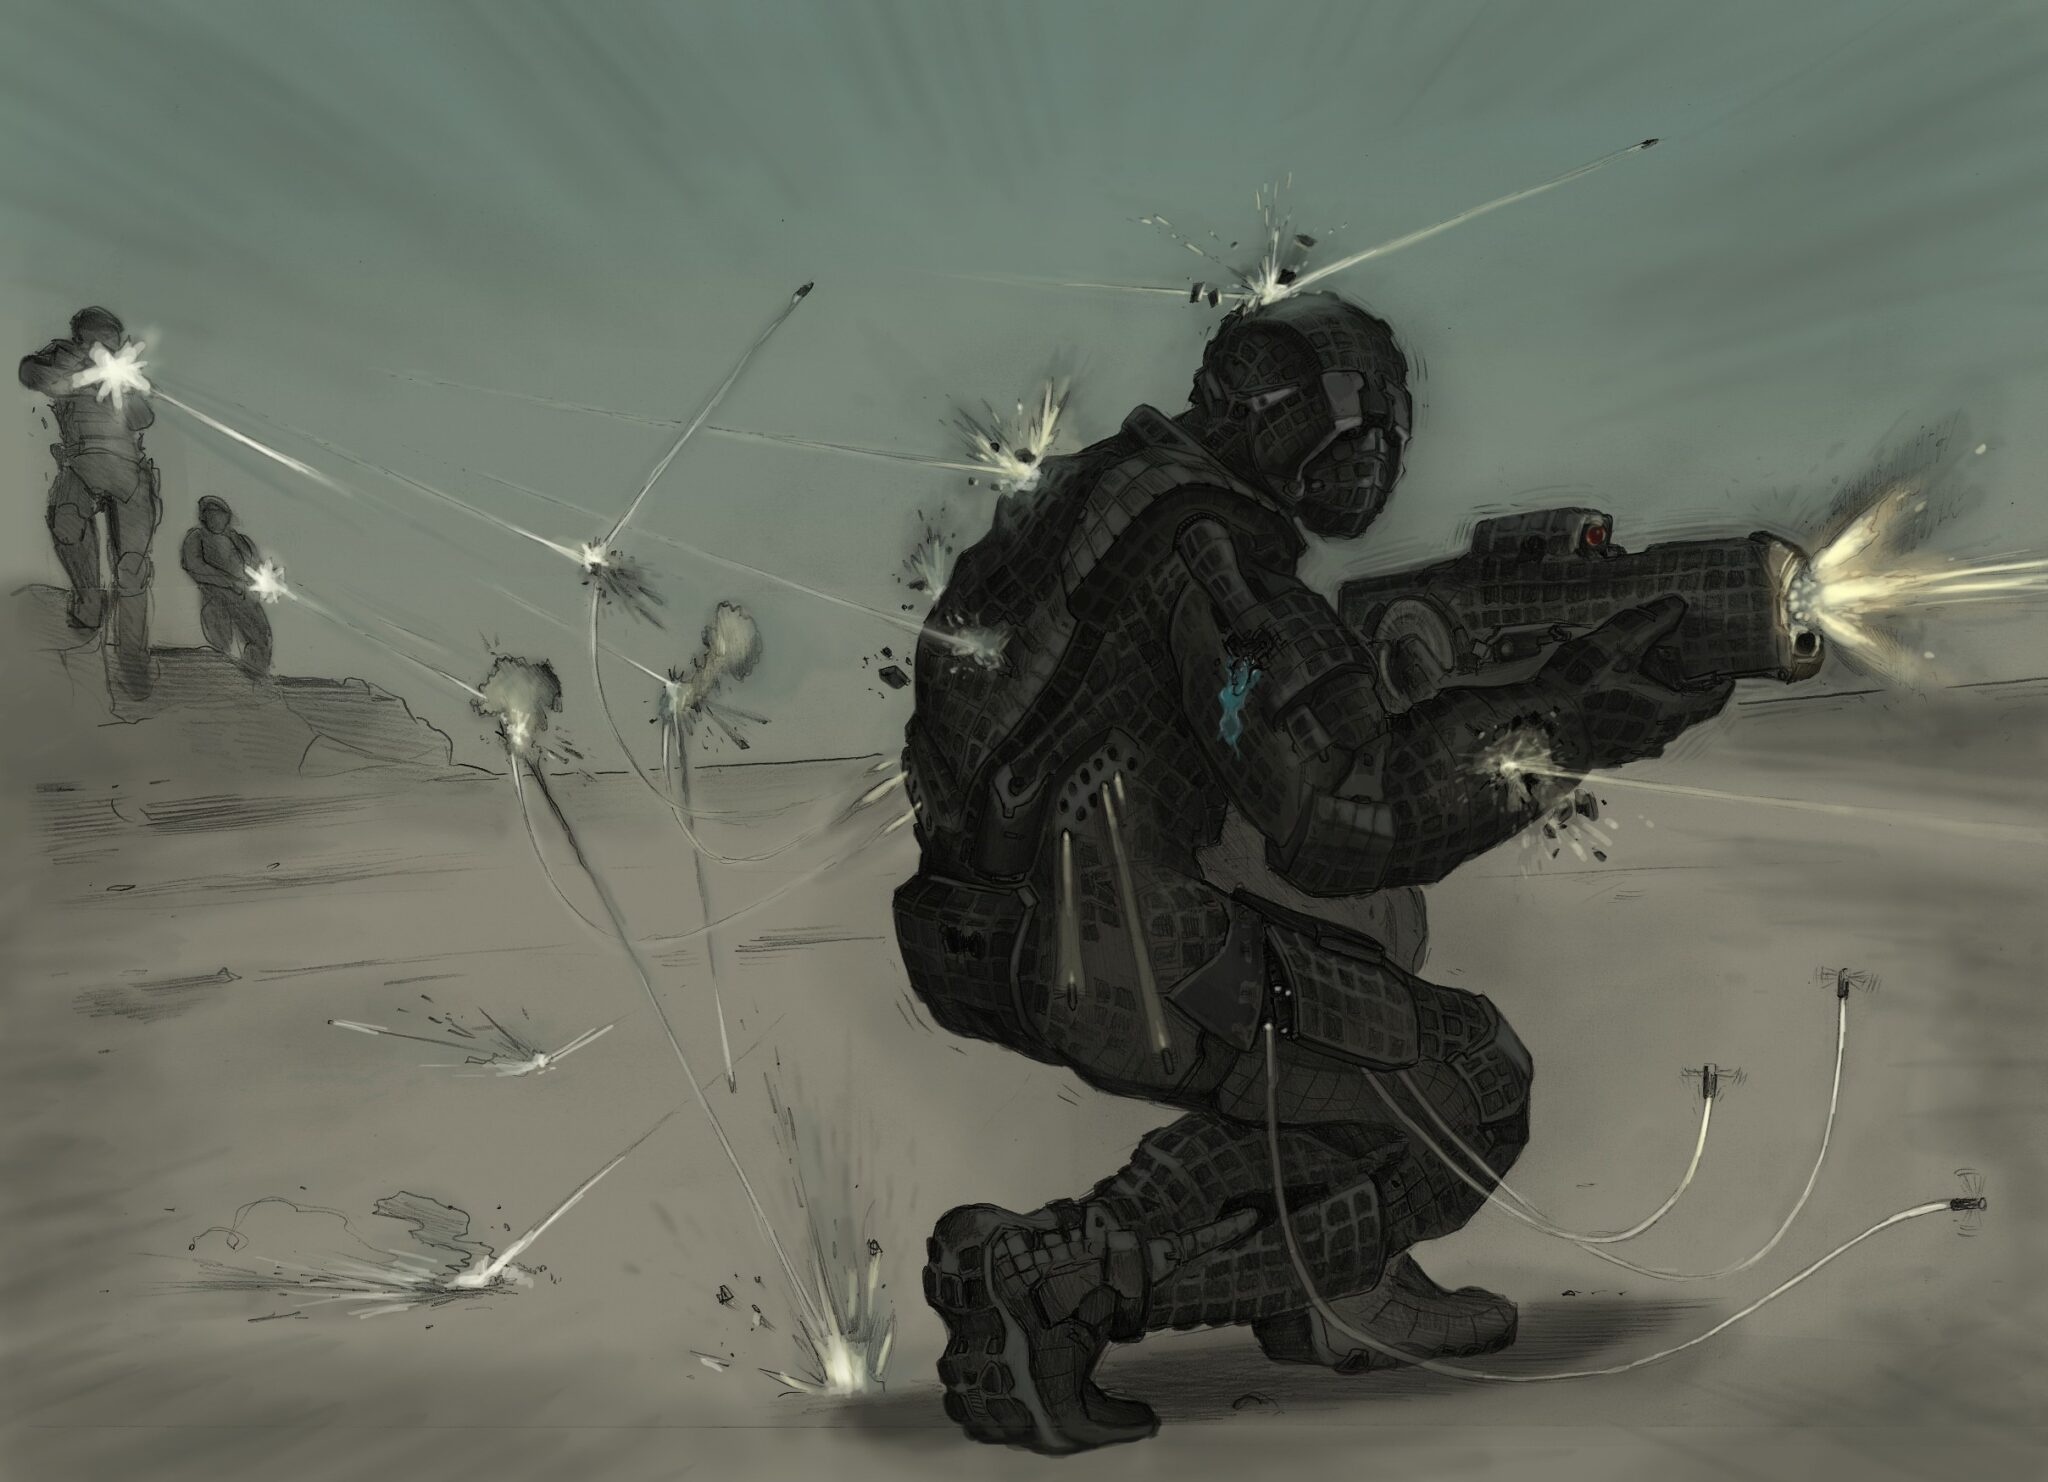 Les premiers dessins conceptuels montrent le look science-fiction des armures prévu pour Stealth Ranger.